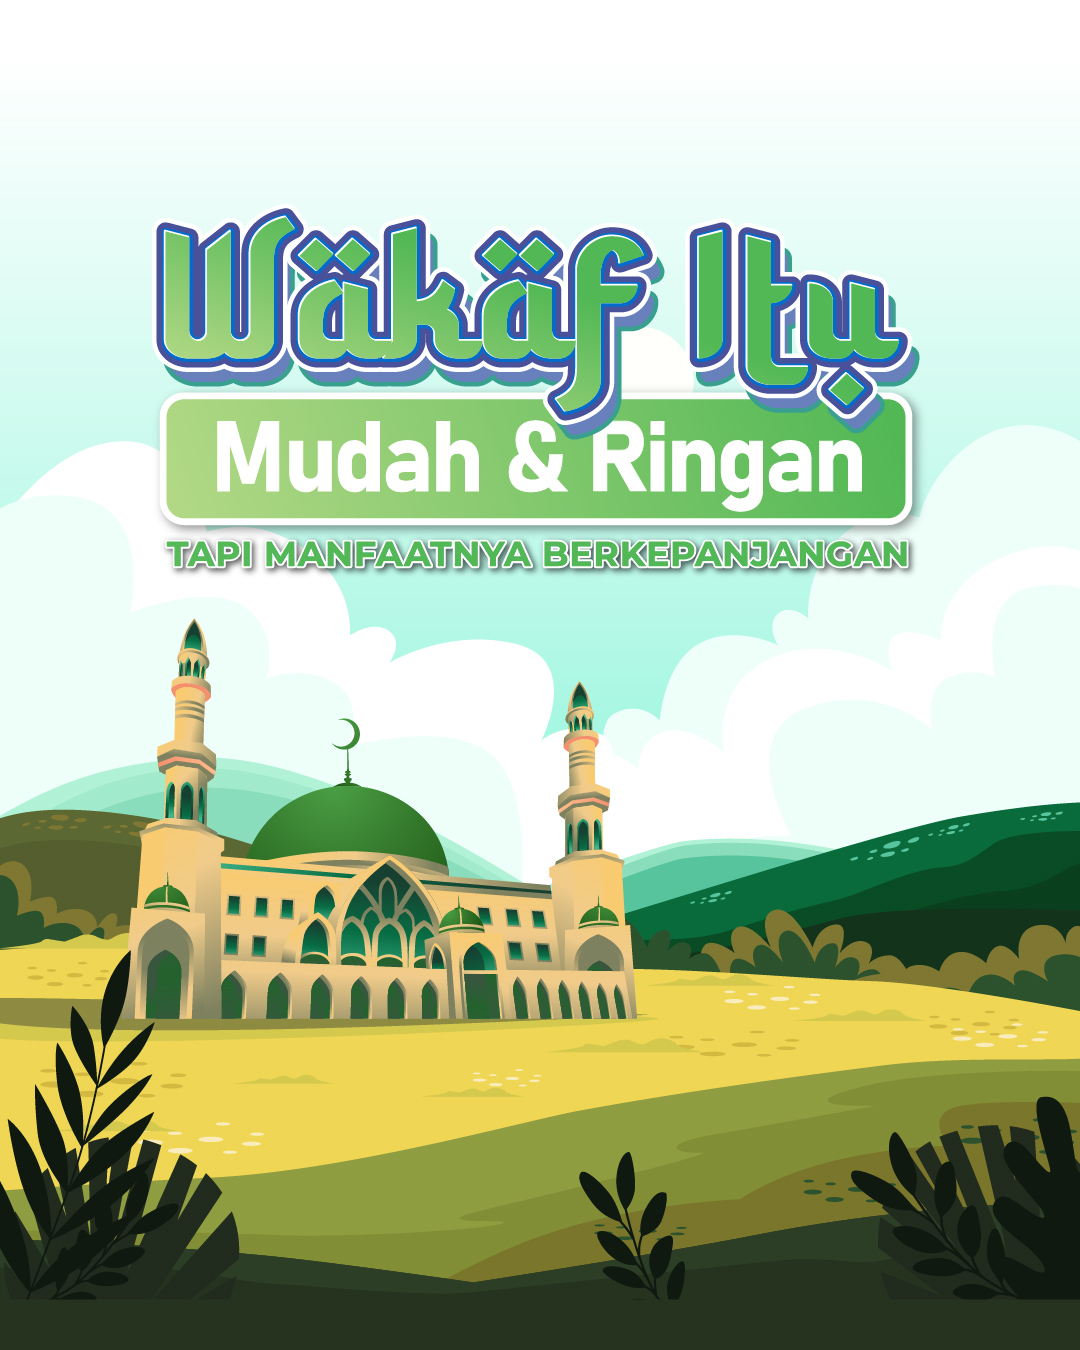 Template Poster Wakaf Masjid Siap Pakai untuk Donasi